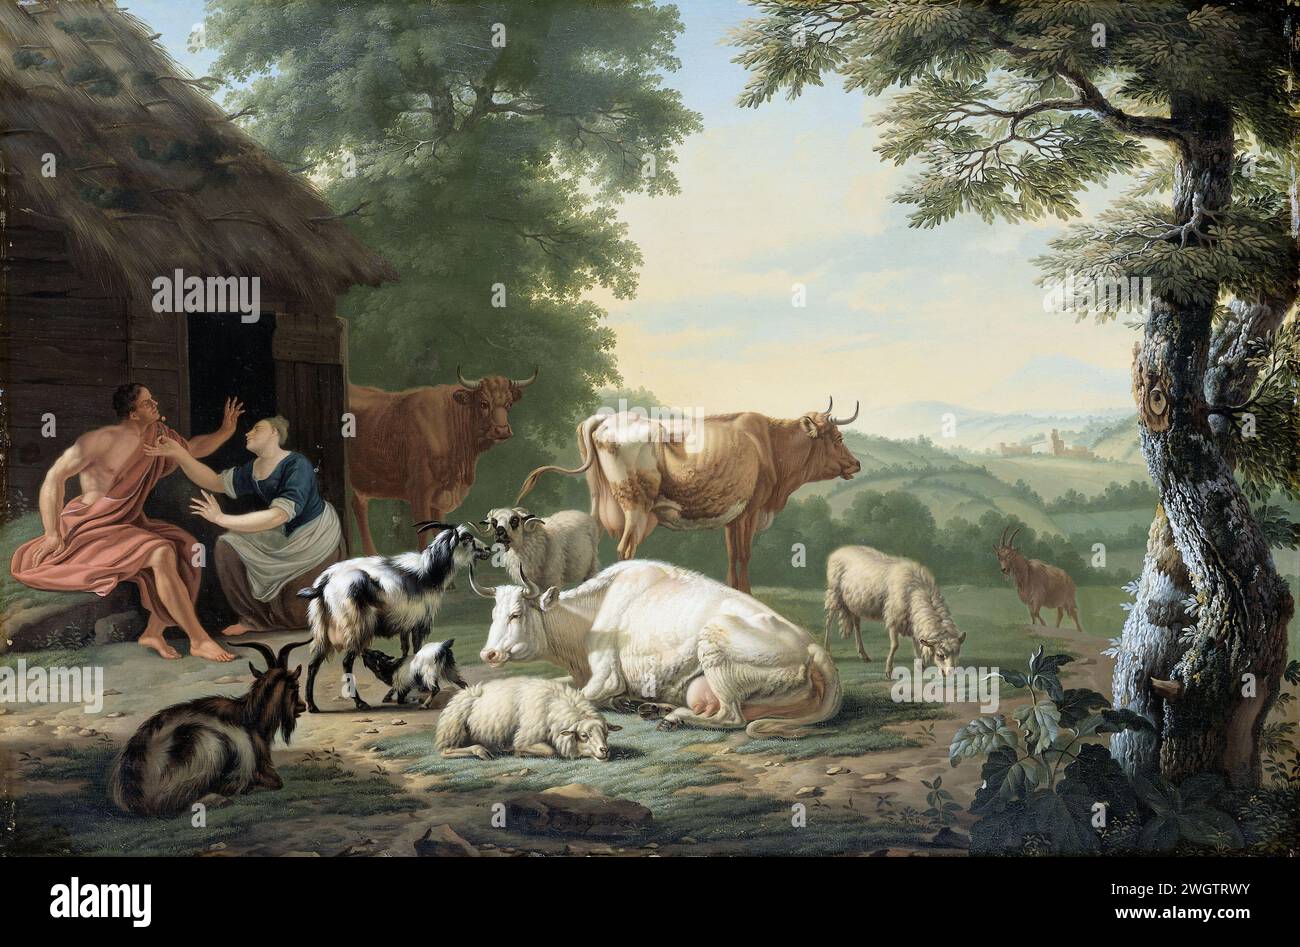 Paysage arcadien avec bergers et bétail, Jan van Gool, 1710 - 1763 peinture paysage arcadien avec bergers et bétail. Dans une ferme, une femme agenouillant une fleur devant le visage d'un berger assis. A droite vaches, moutons et chèvres. Sur la droite un paysage vallonné. panneau. peinture à l'huile (peinture) éleveur, berger, berger, berger, berger, vacher, etc. Pastorales, scènes arcadiennes Banque D'Images